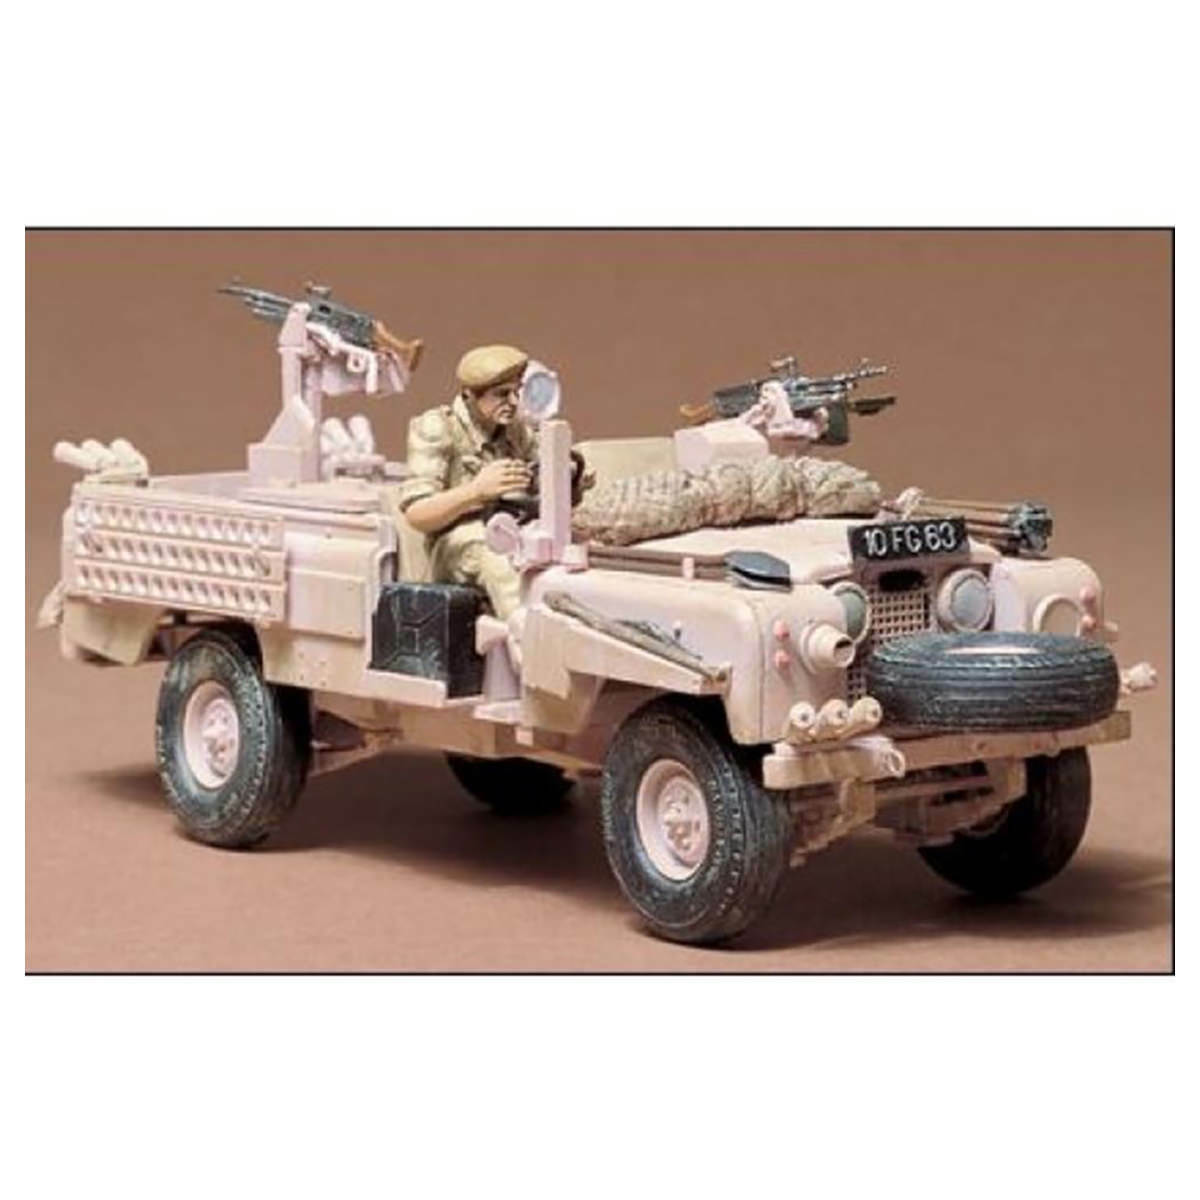 35076 Tamiya Sas British Pink Panther 1/35th Plastic Kit Military Jeep Vehicle